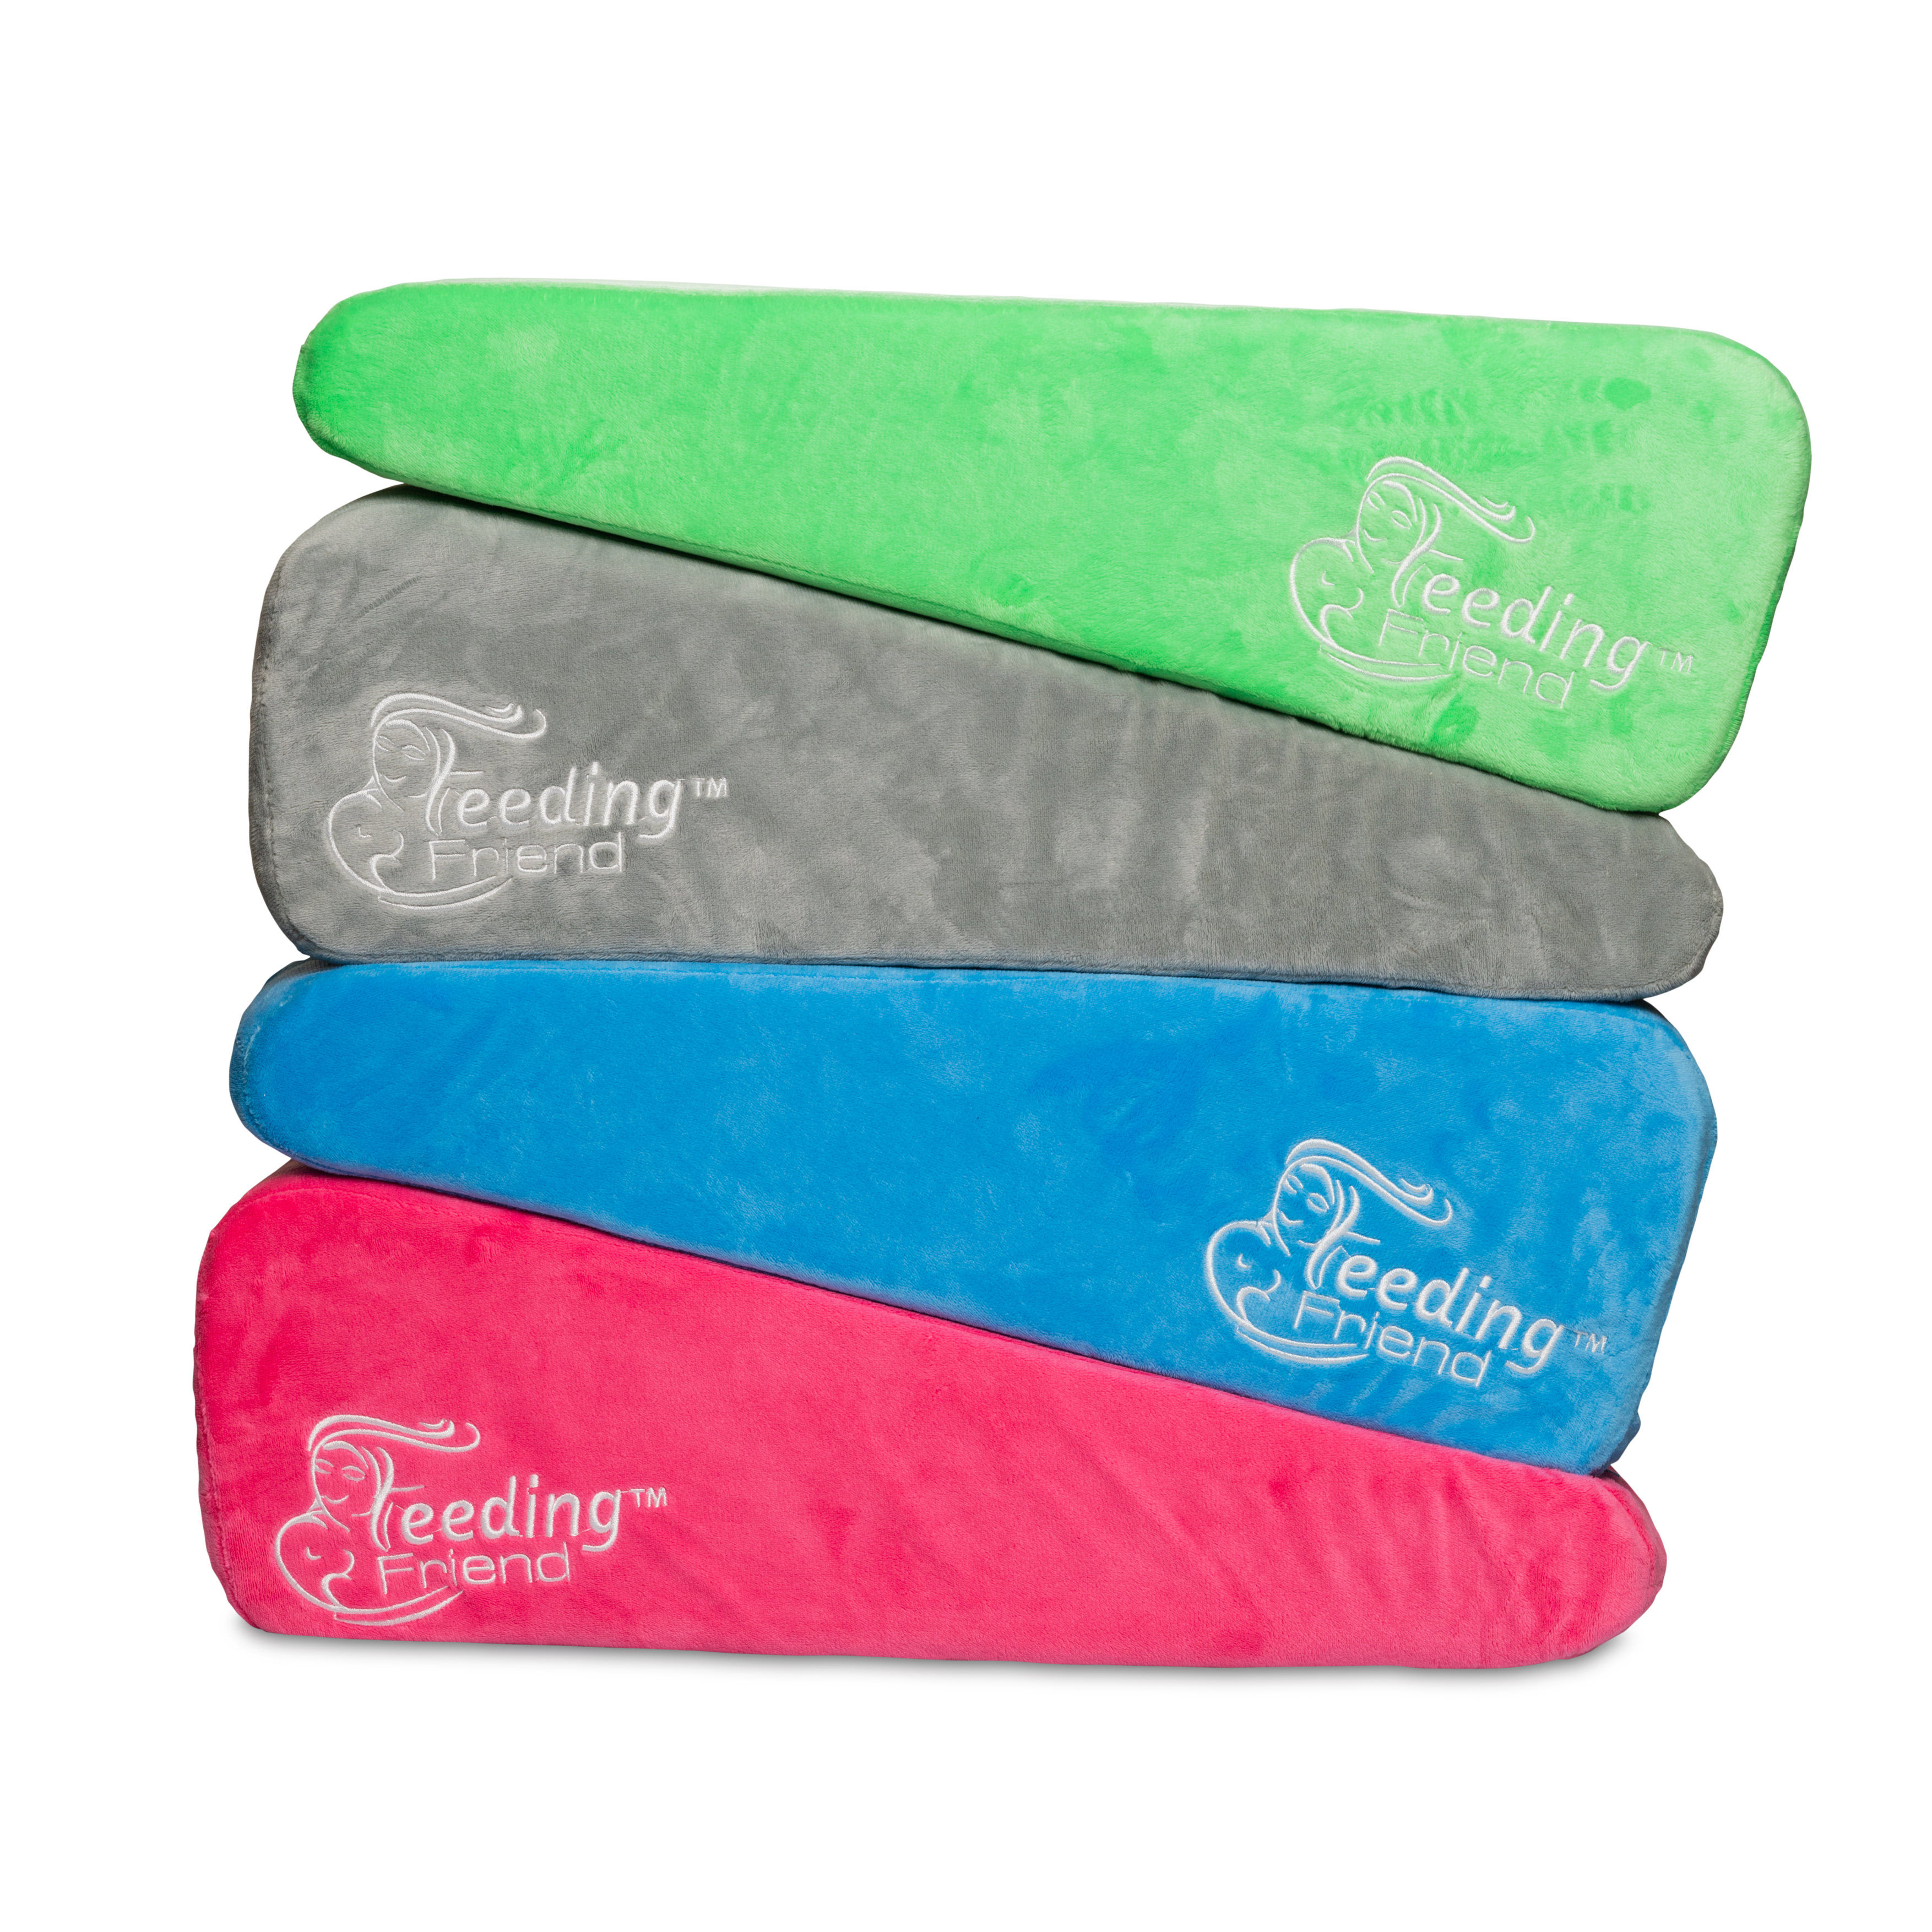 Feeding Friend Nursing Pillow & Additional Cover Bundle (LIMITED!)Feeding Friend,Breastfeeding Essentials